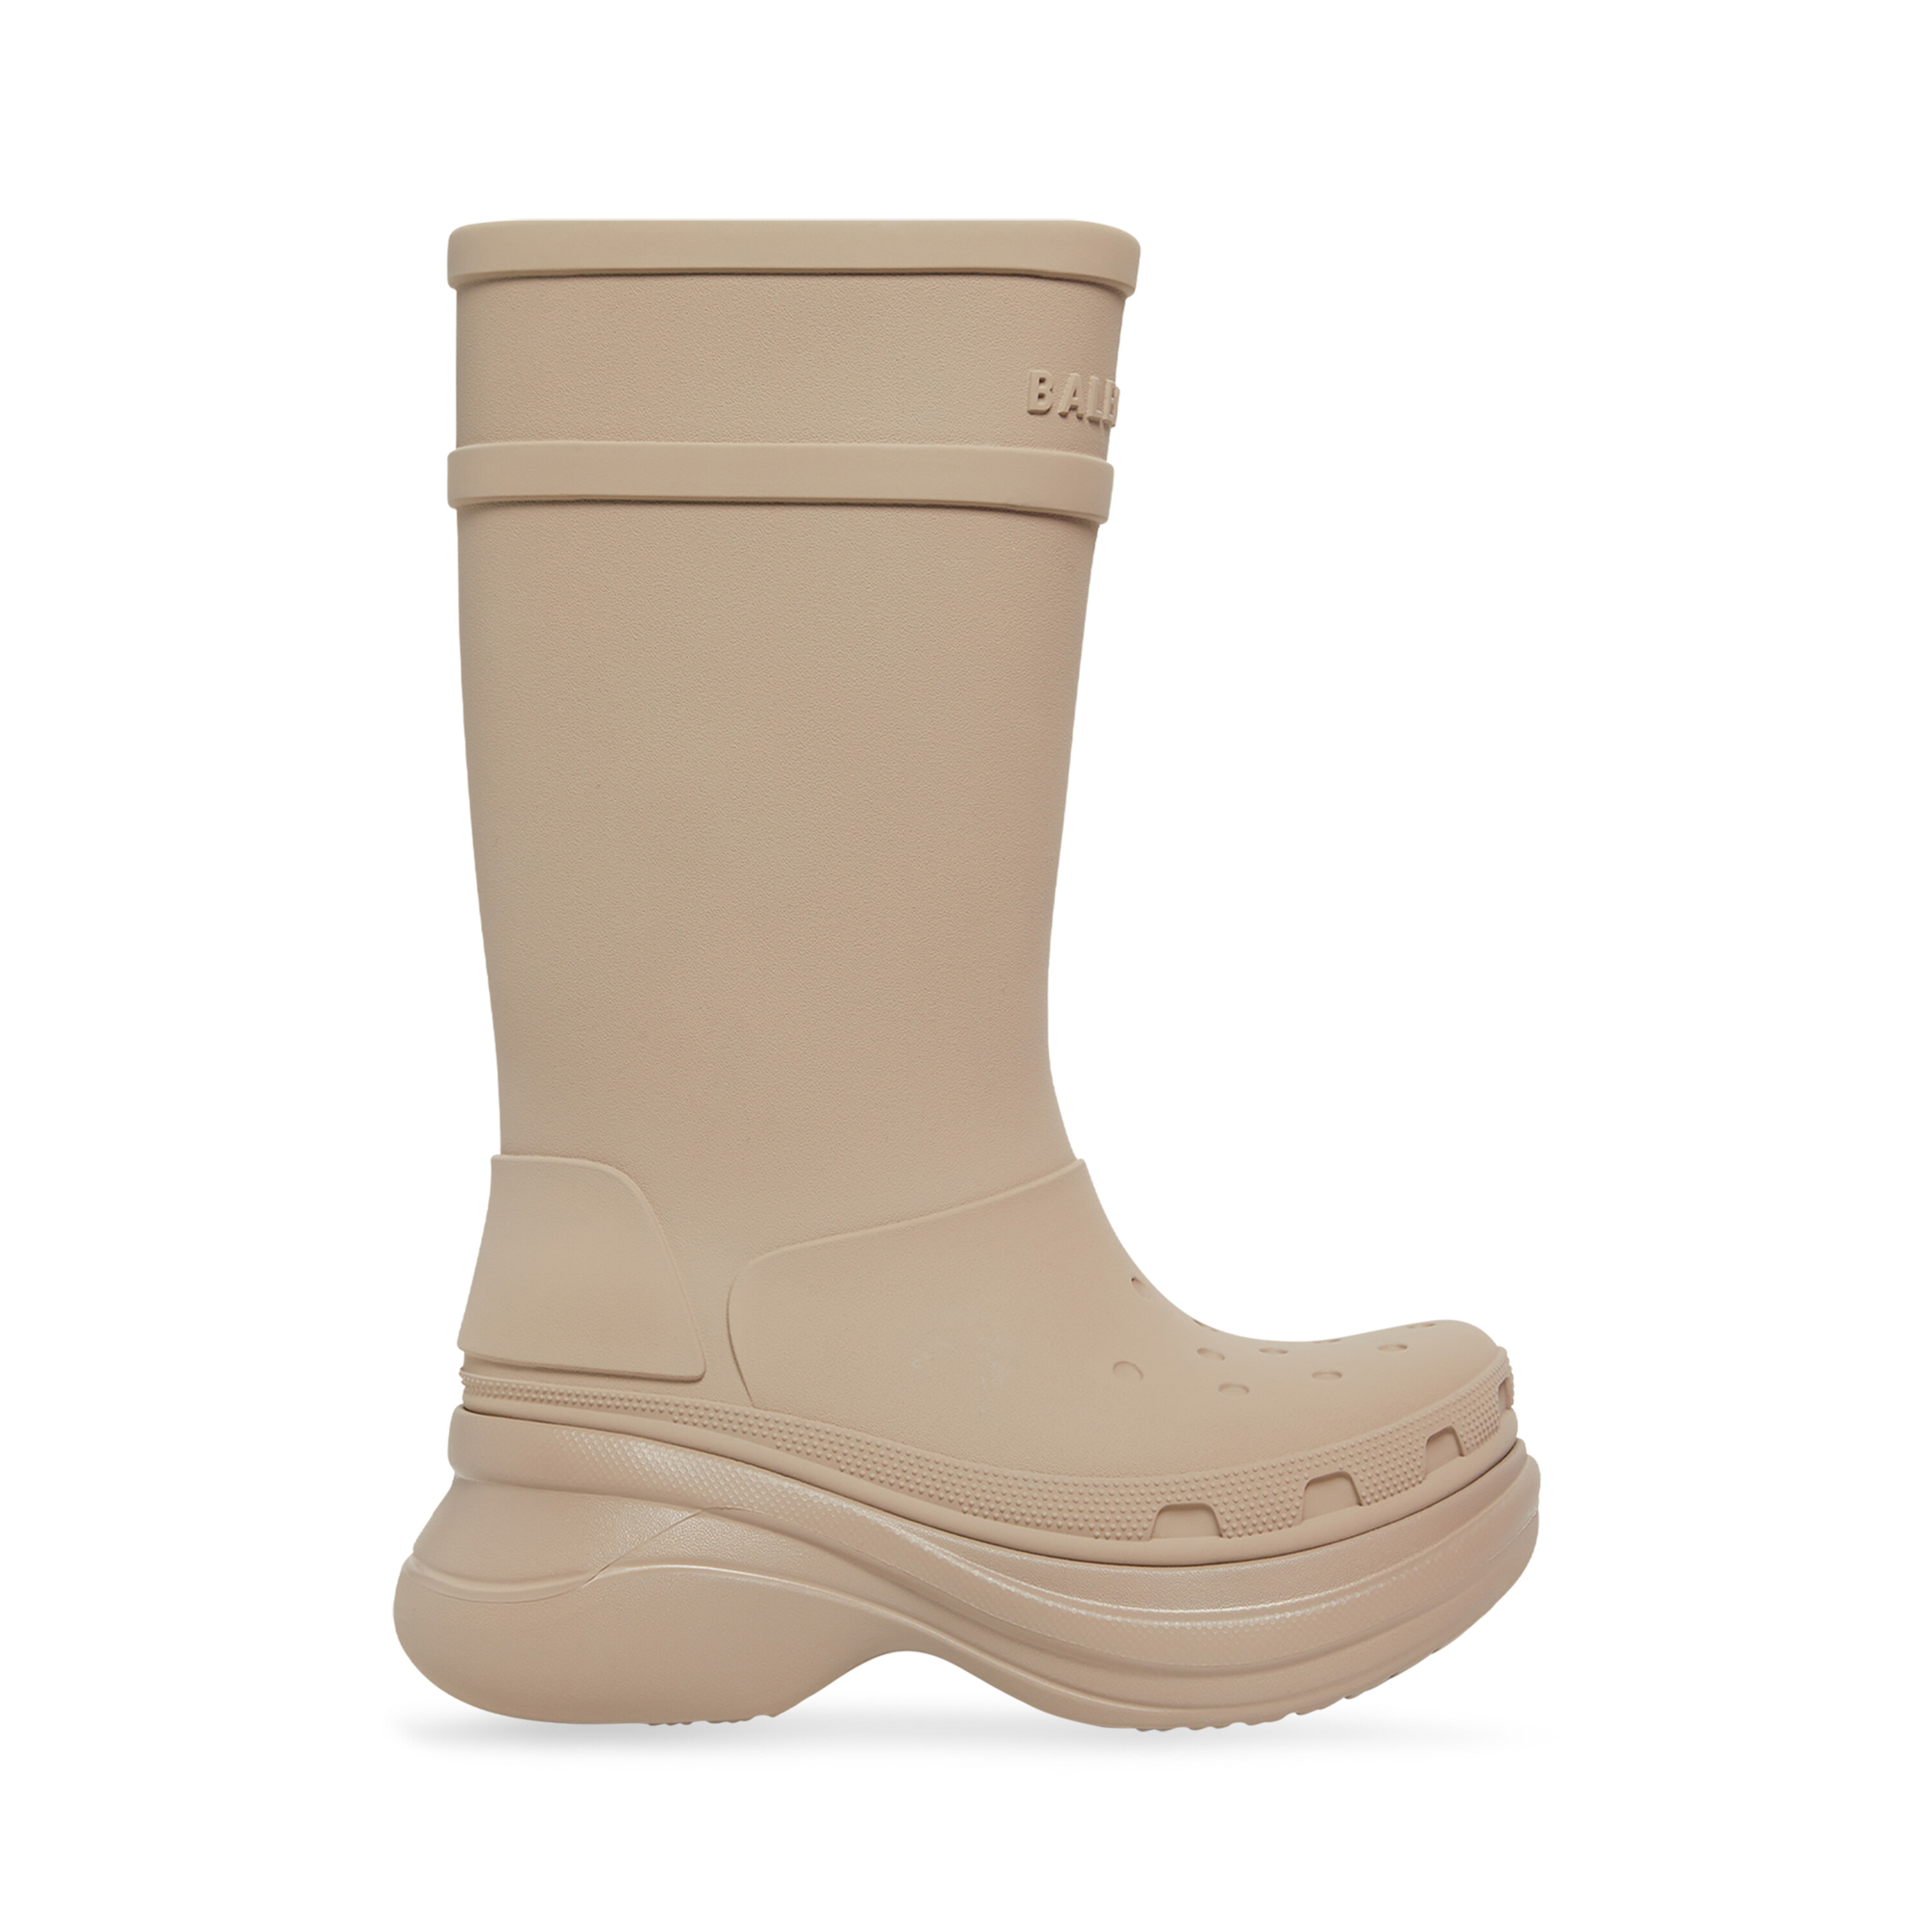 Balenciaga x Crocs Mens Tonal Rubber Rain Boots  Neiman Marcus